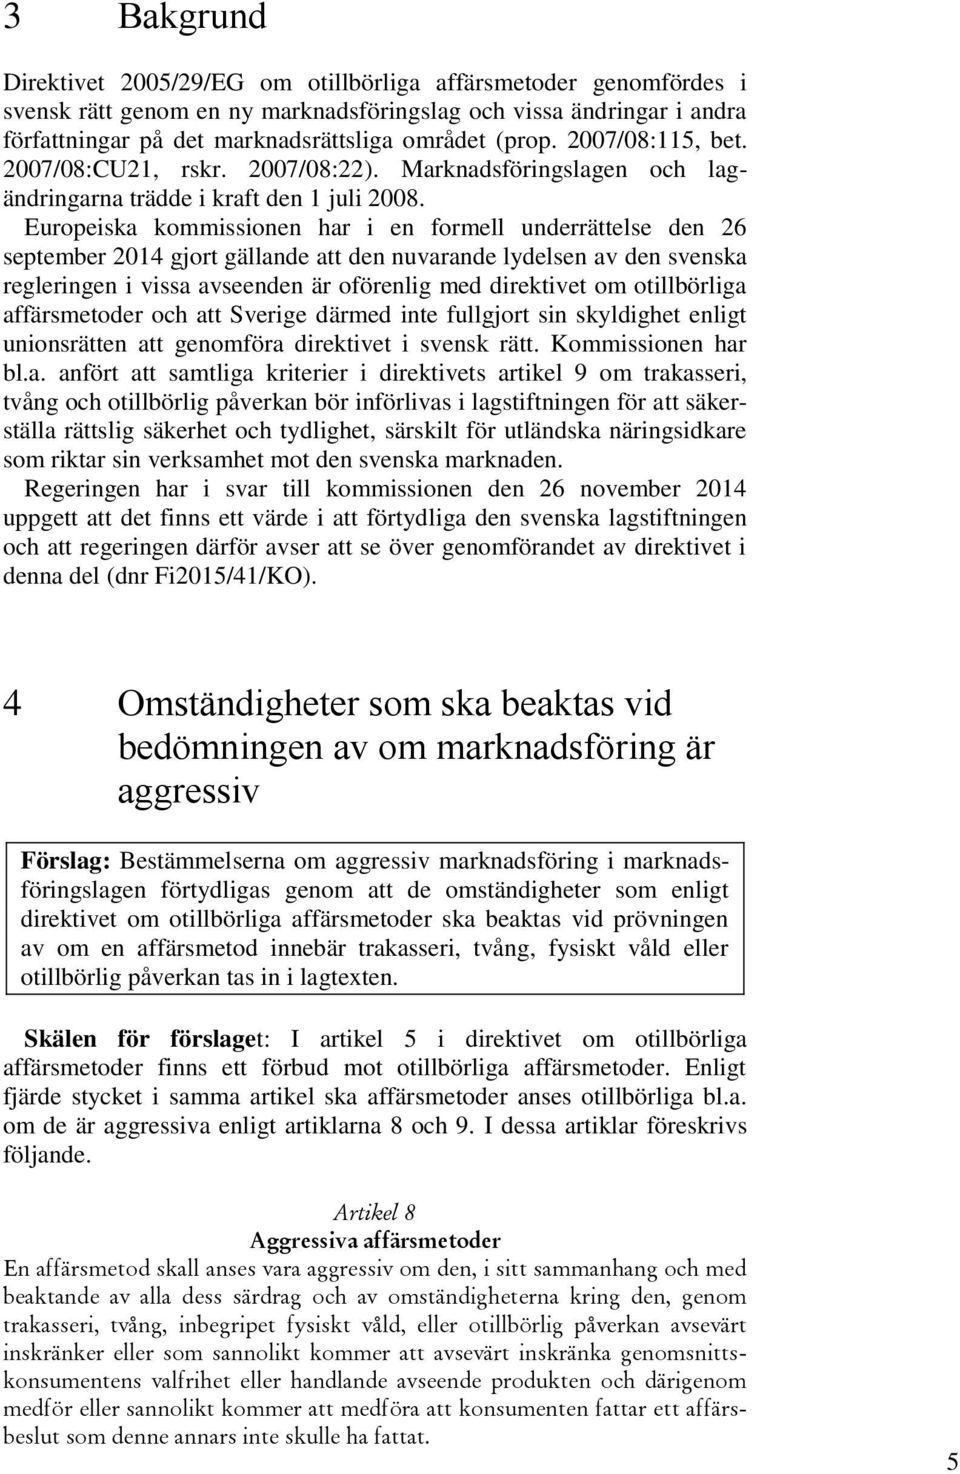 Europeiska kommissionen har i en formell underrättelse den 26 september 2014 gjort gällande att den nuvarande lydelsen av den svenska regleringen i vissa avseenden är oförenlig med direktivet om